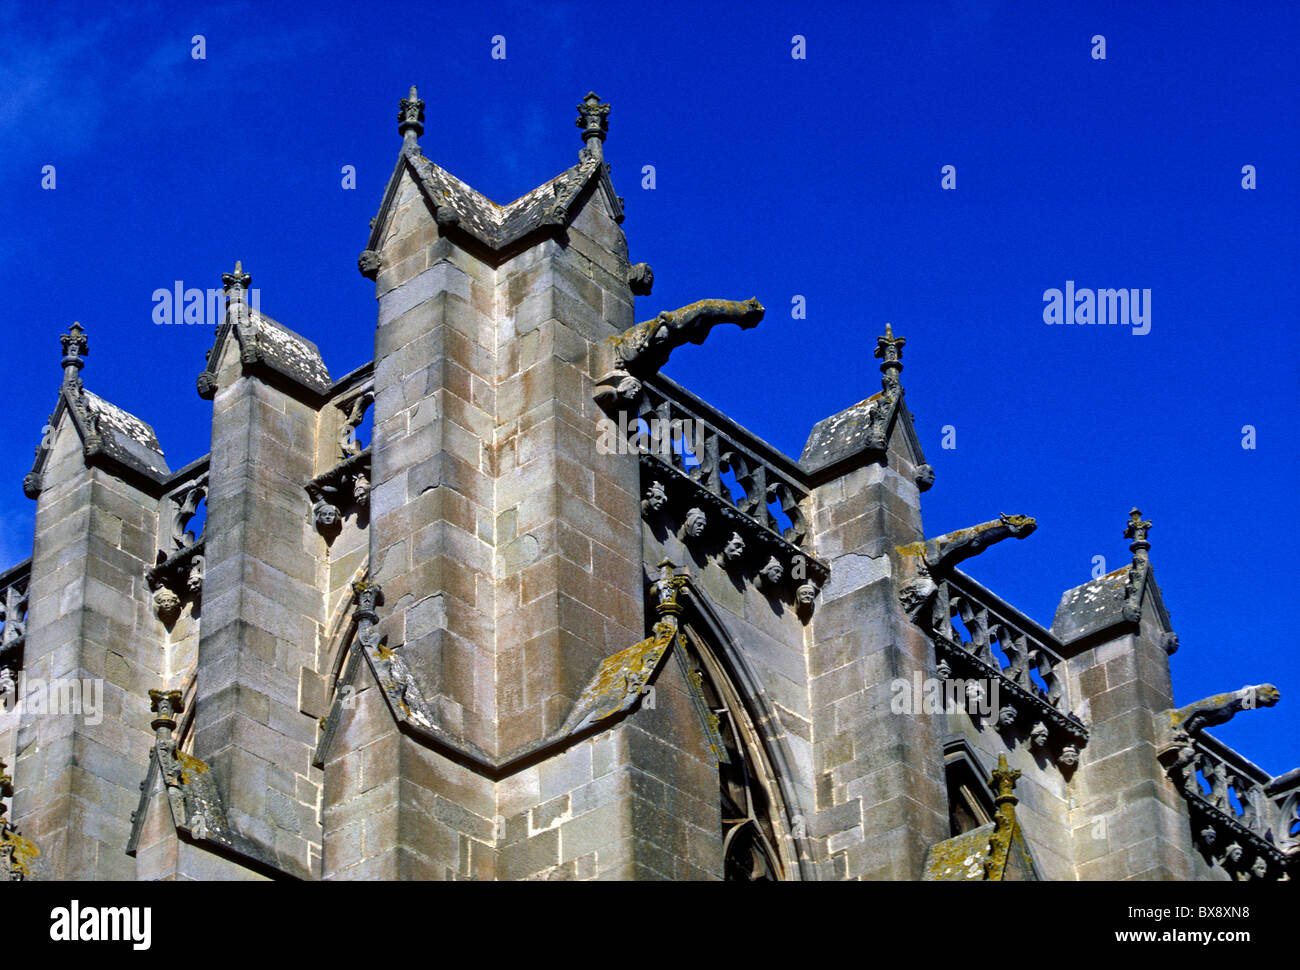 gargoyles, Basilique des Saints Nazaire et Celse, Saint Nazaire and Saint Celse Basilica, La Cite, town of Carcassonne, Languedoc-Roussillon, France Stock Photo